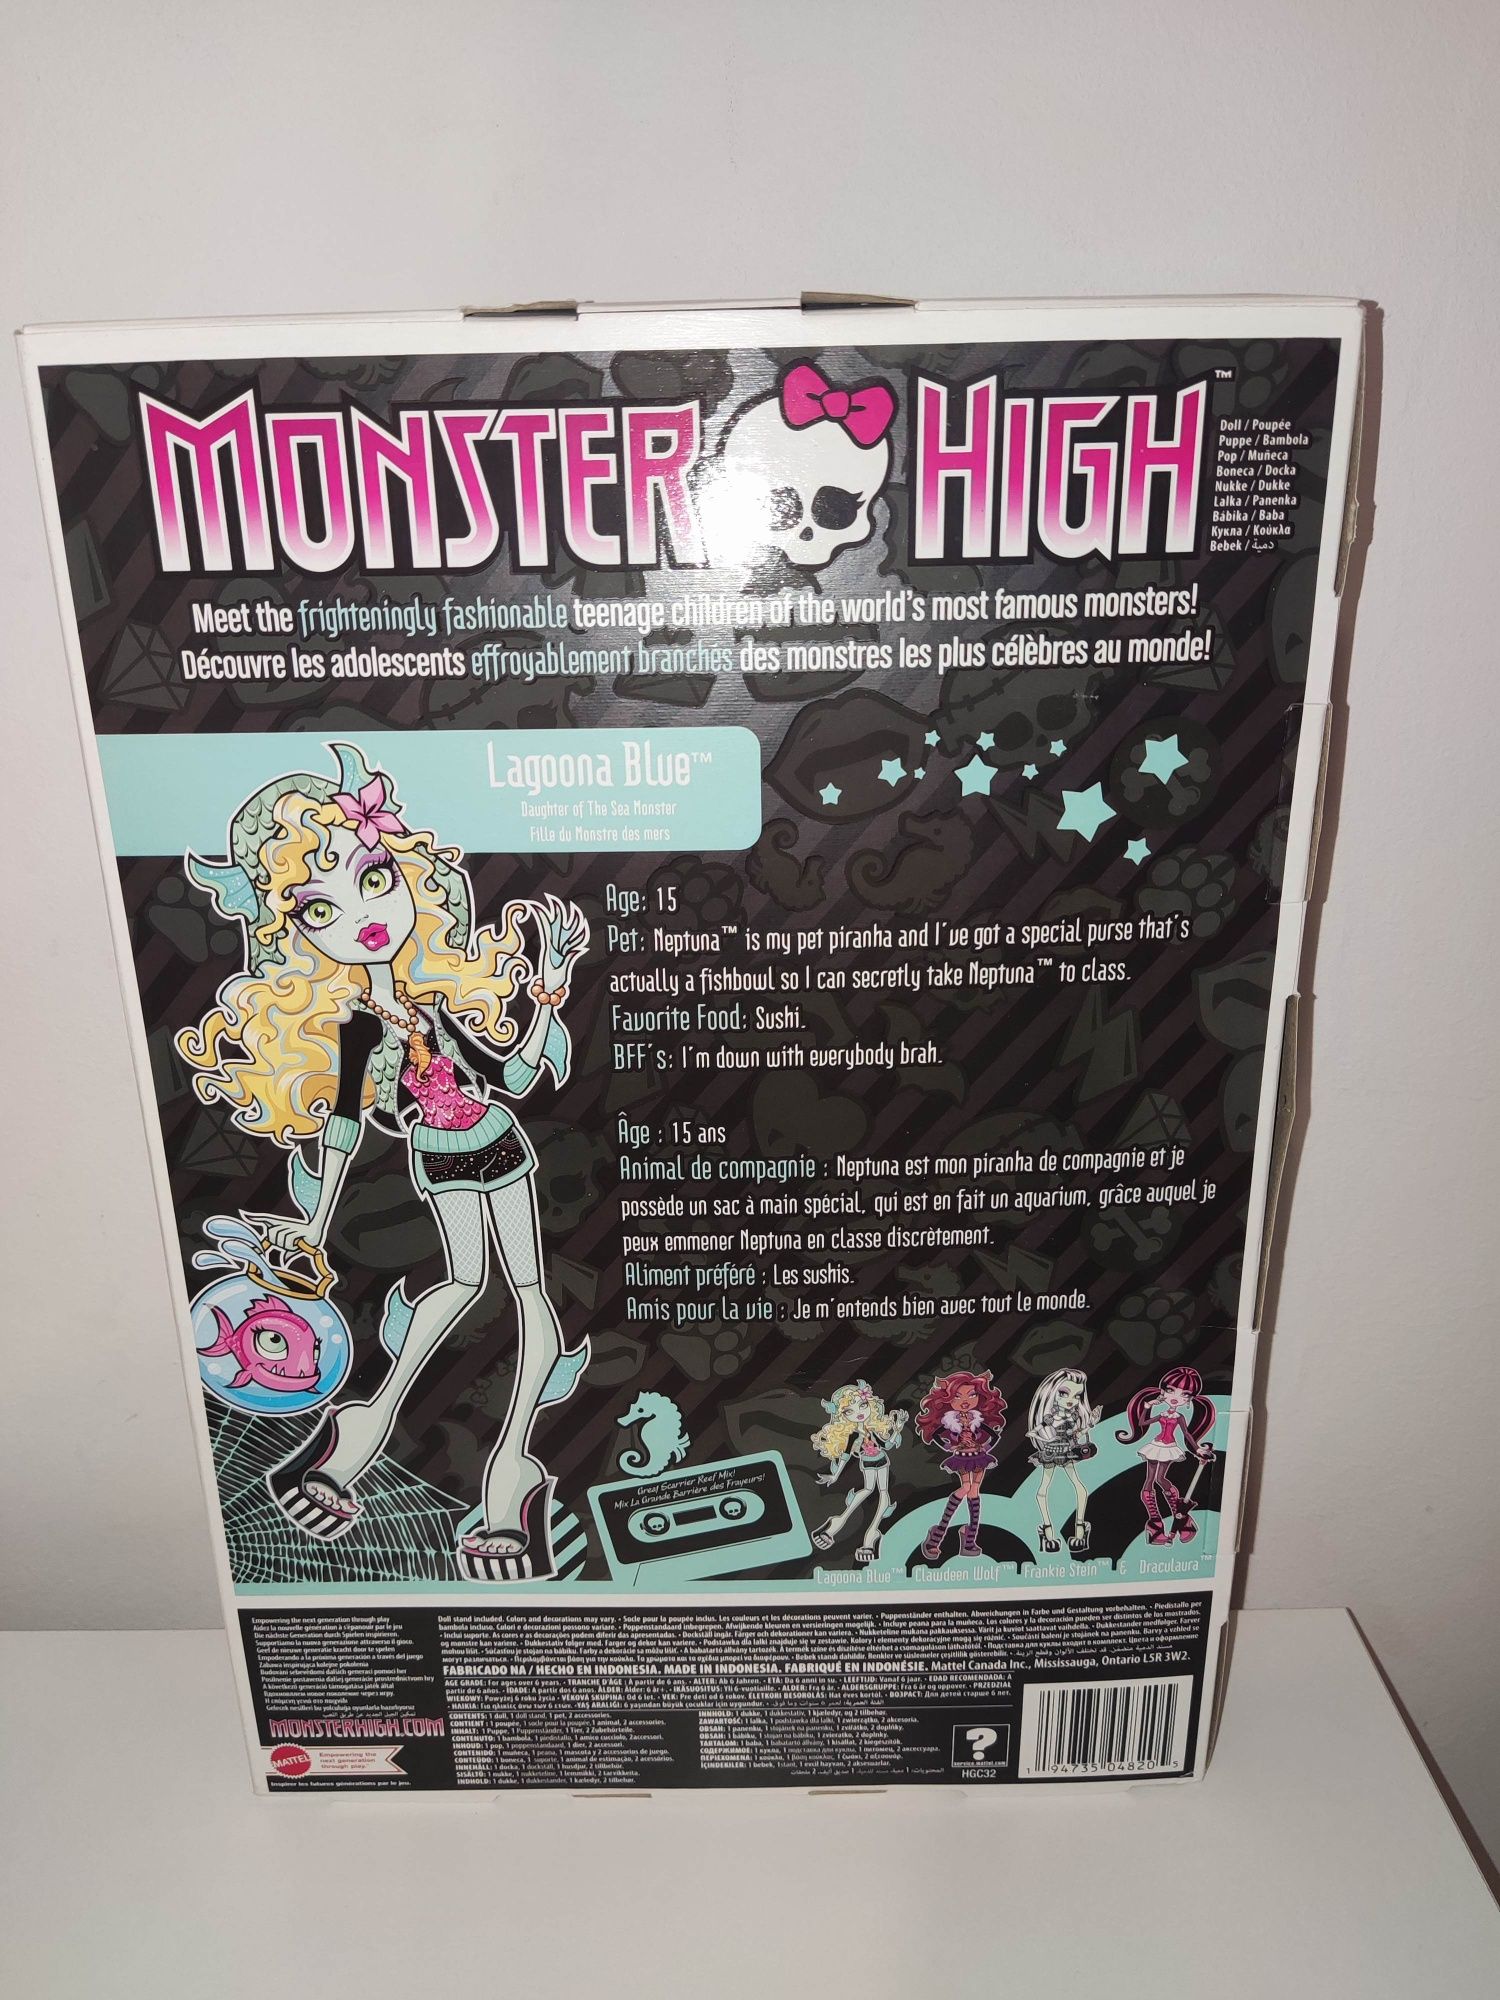 Monster High Lagoona Blue reprodukcja